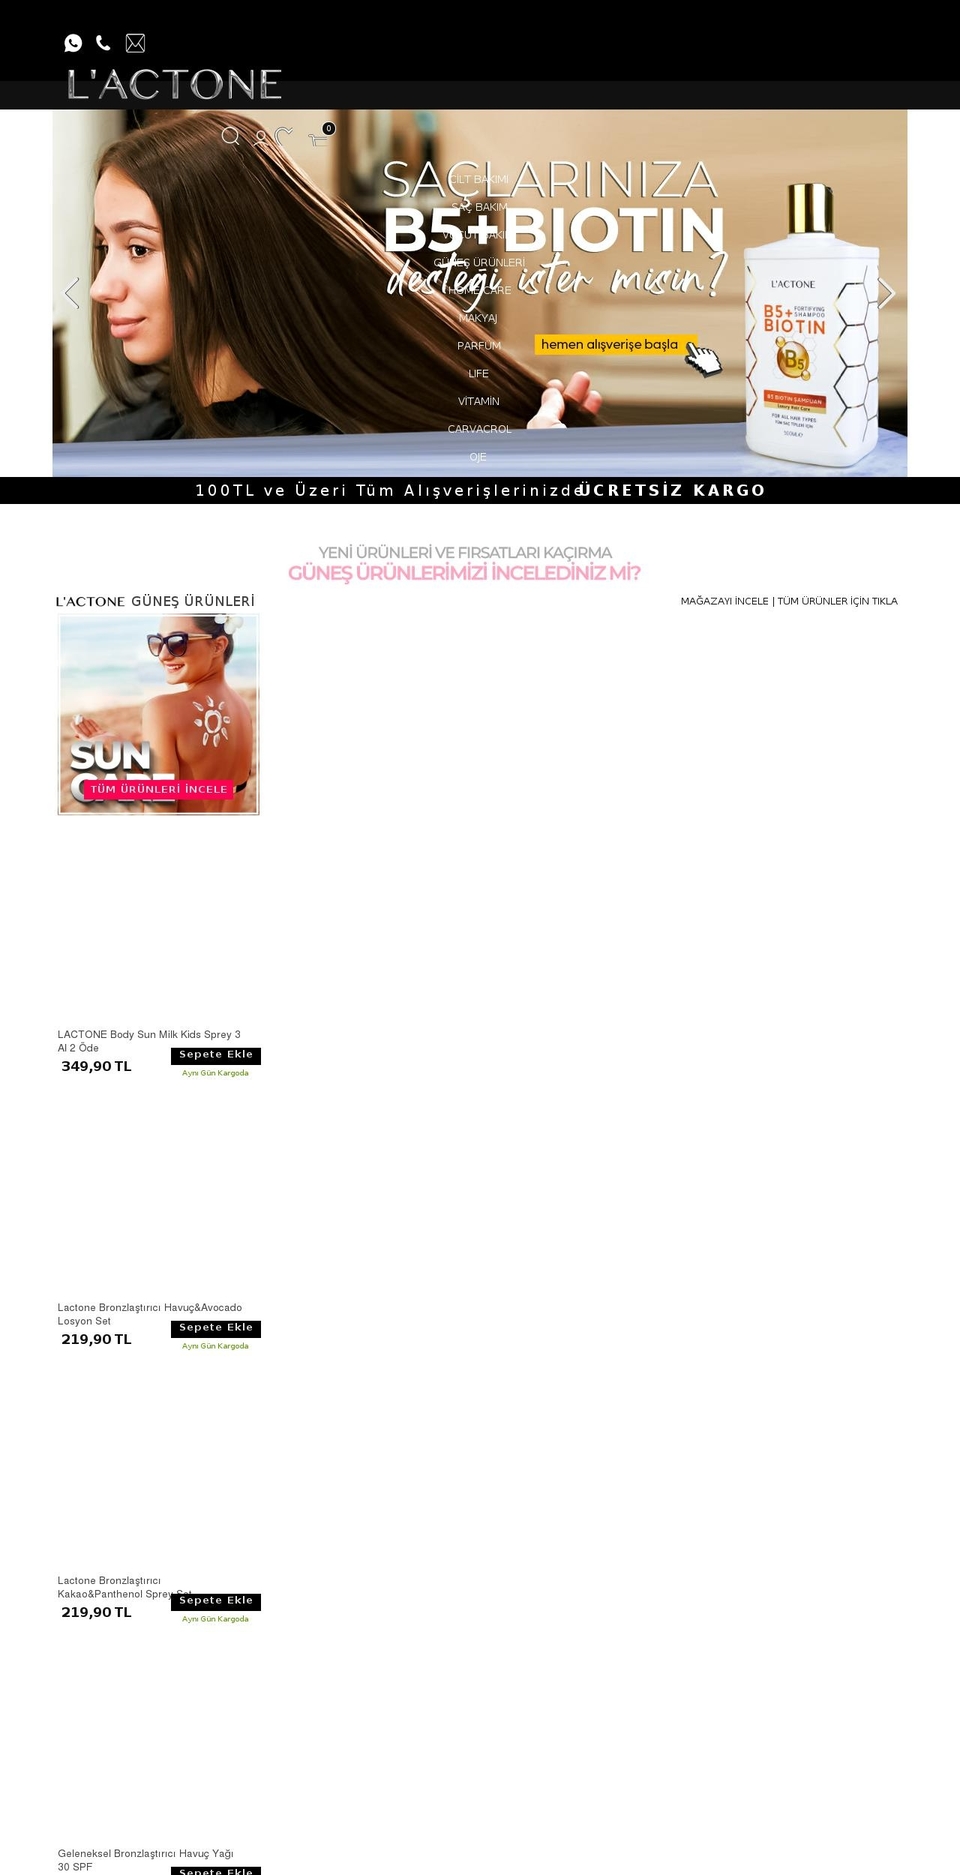 lactone.com.tr shopify website screenshot